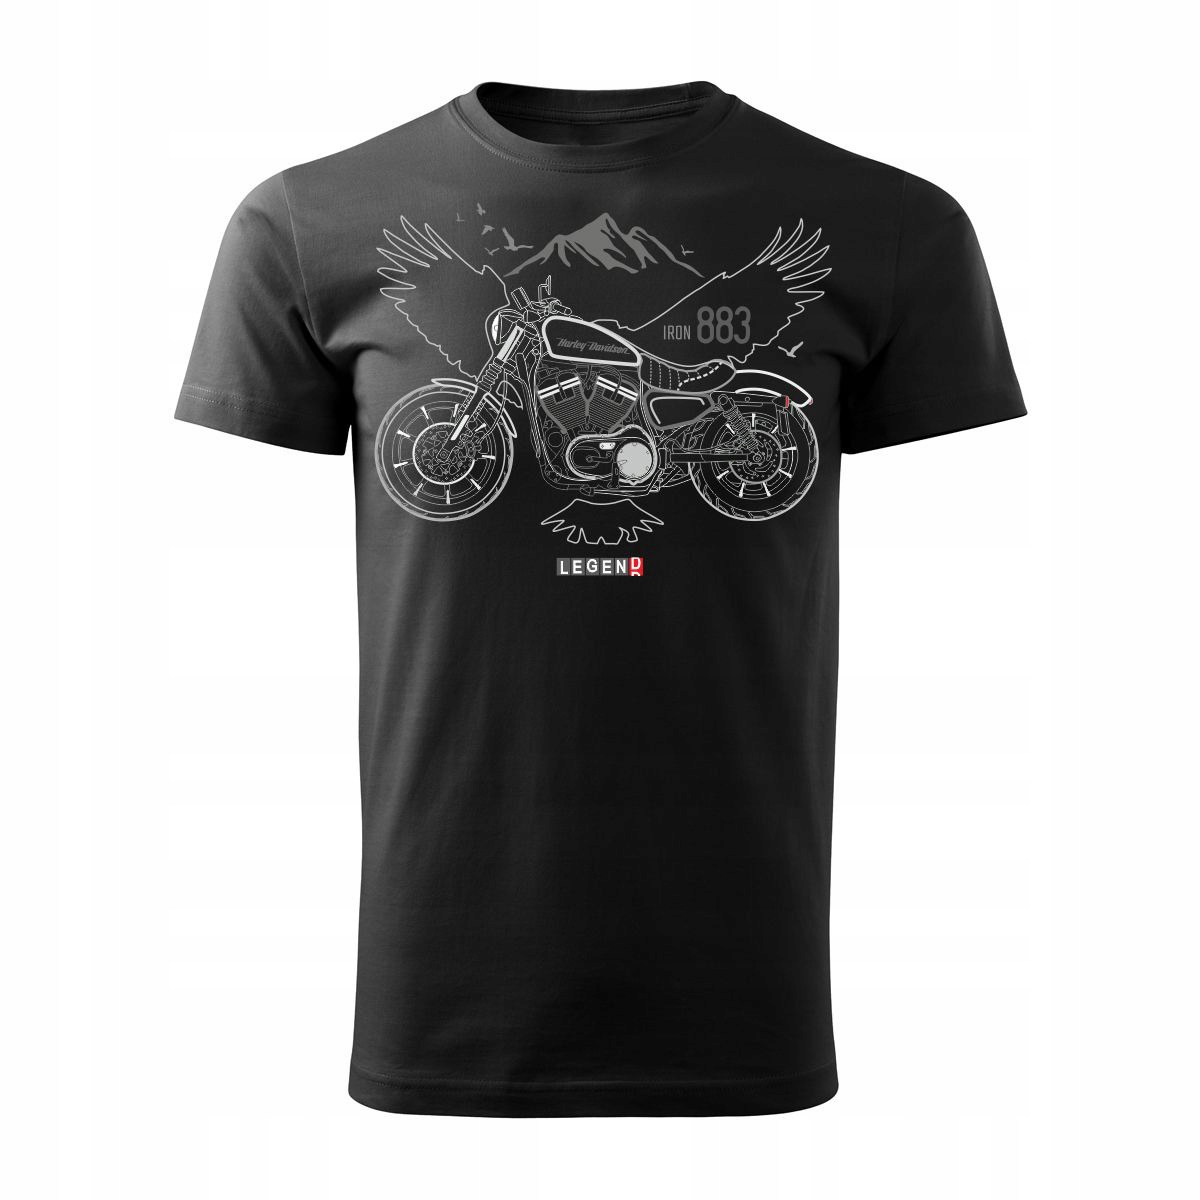 Moto tričko na motorku Harley Iron 883 s motorkou ako darček